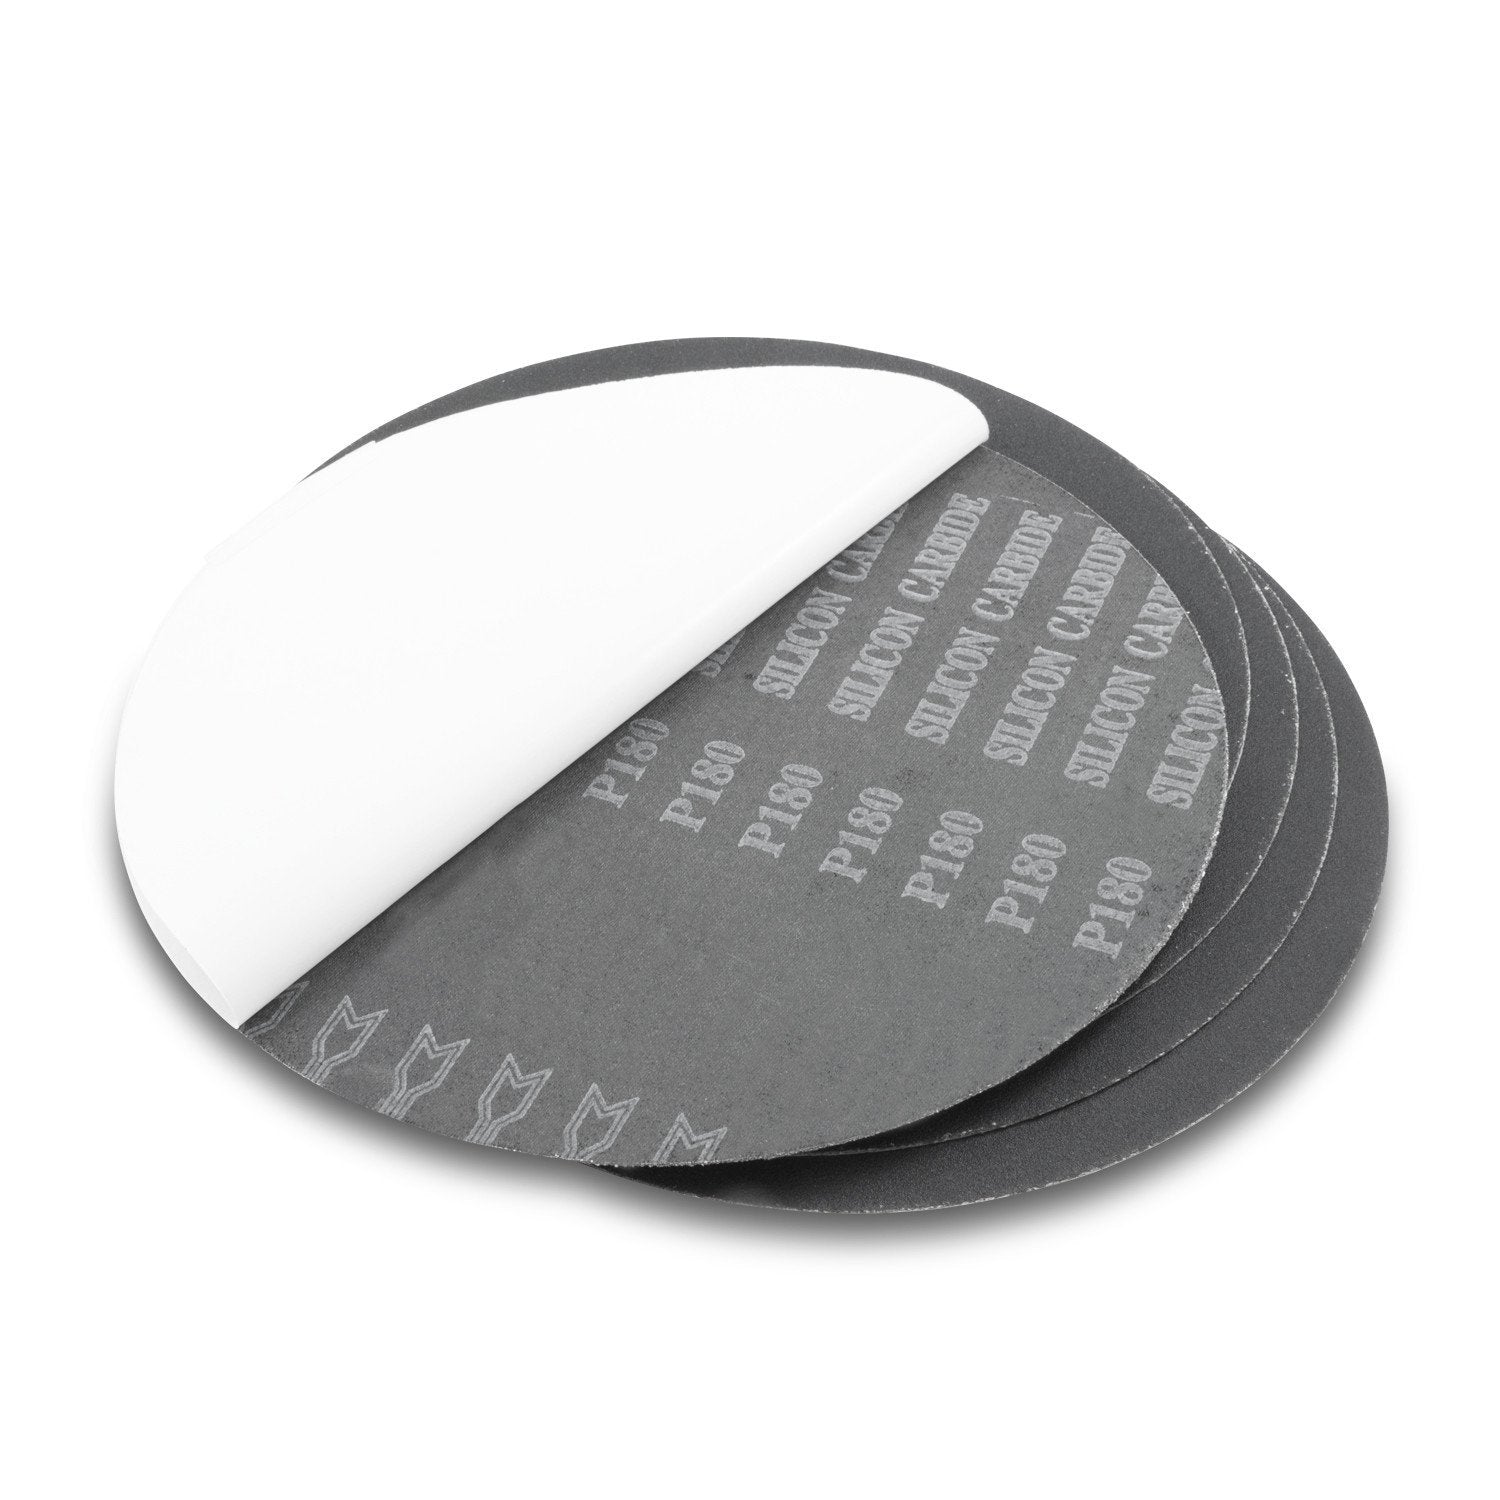 ACE Screw-On Sanding Discs 100 Grit Medium, 5 Discs, # 17634 *New*